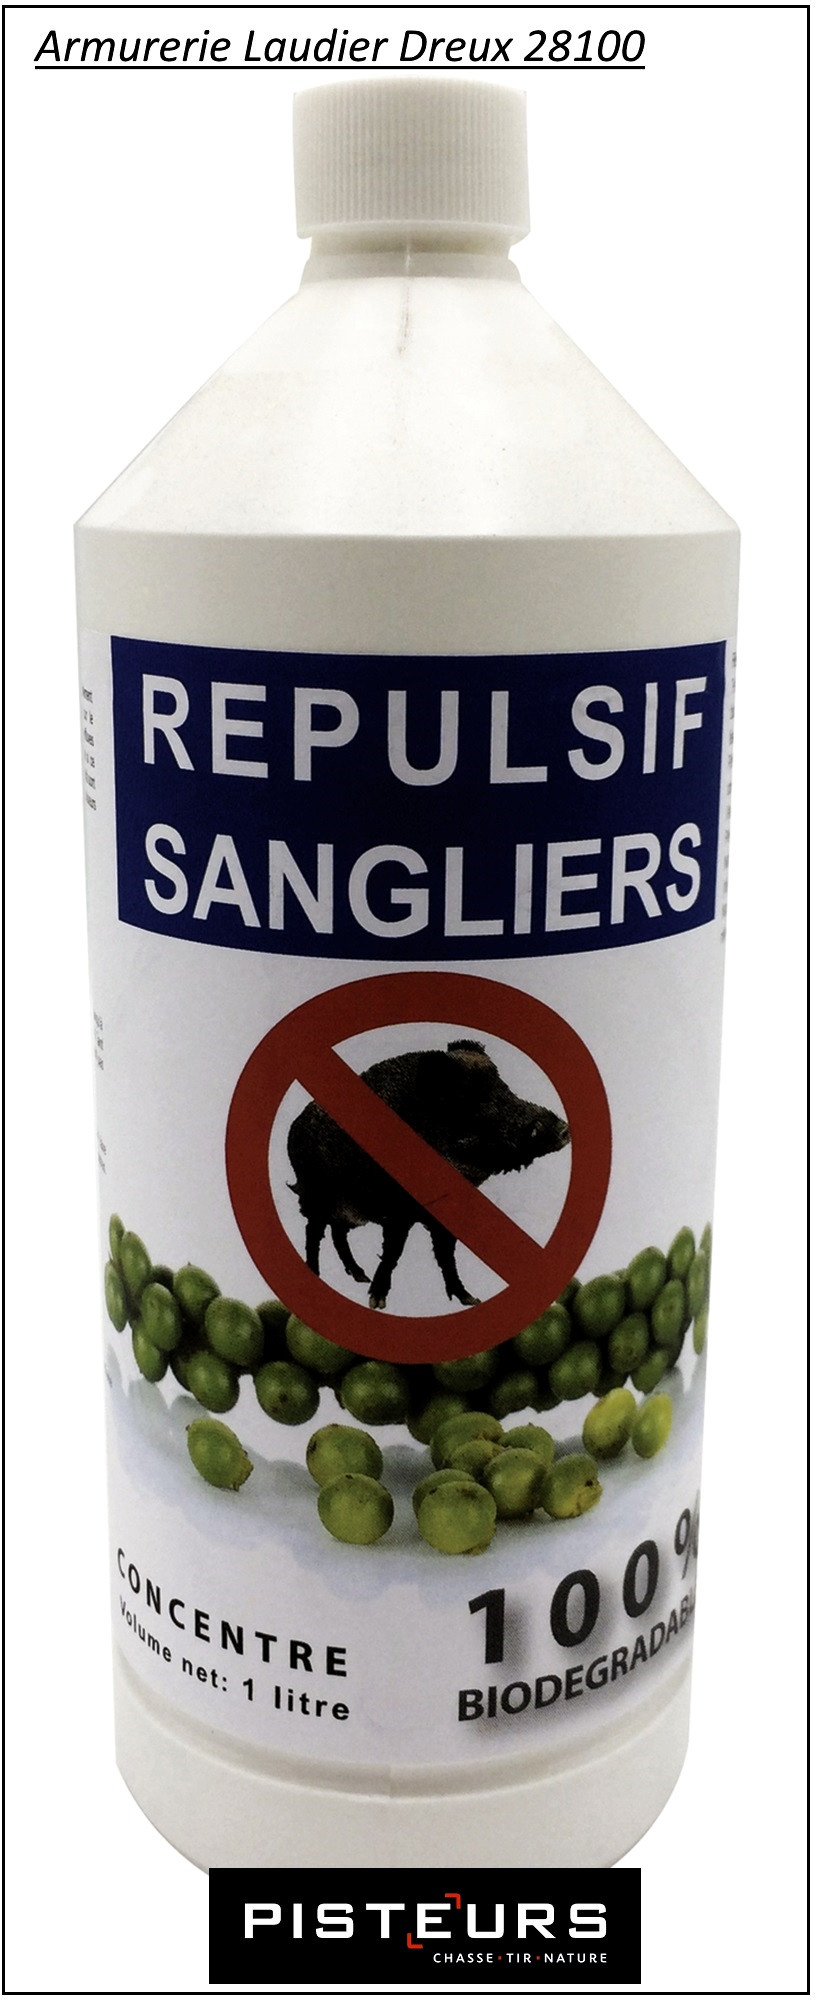 Répulsif-Sanglier-100/100-biodégradable-1 litre-Ref 31855